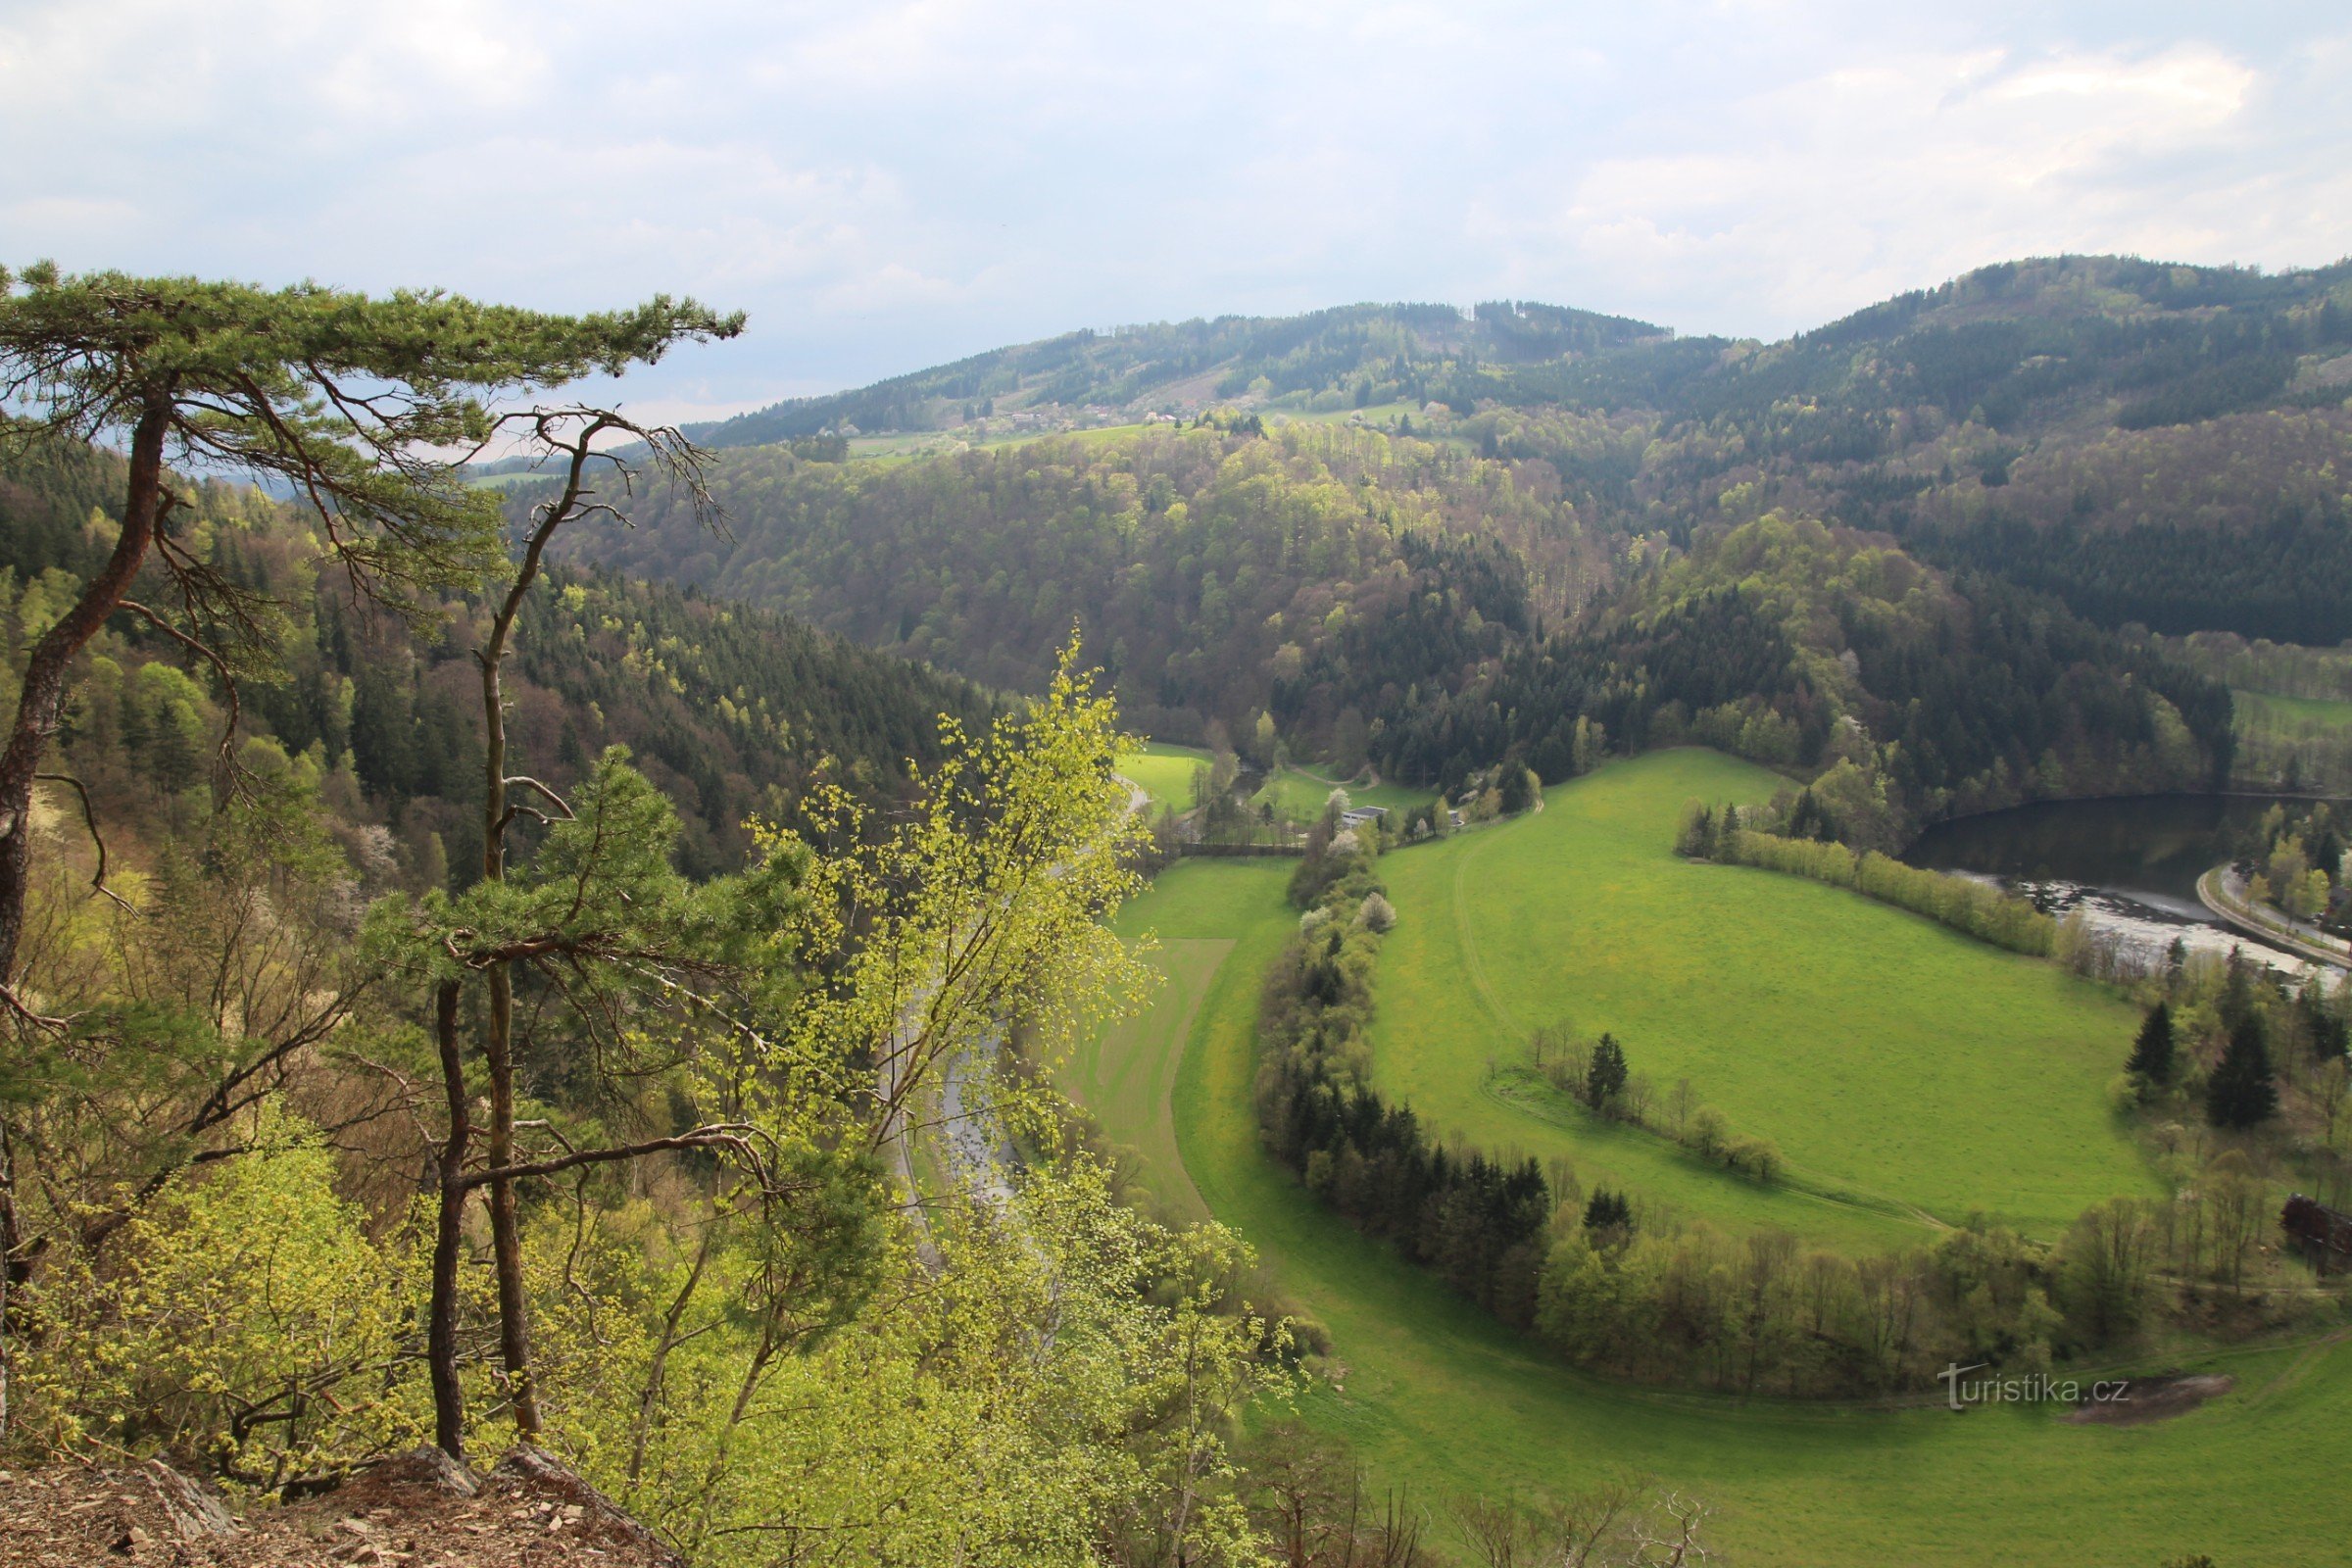 Vista do fundo do vale, acima dele no horizonte no topo de uma cordilheira arborizada está o castelo Zubštejn